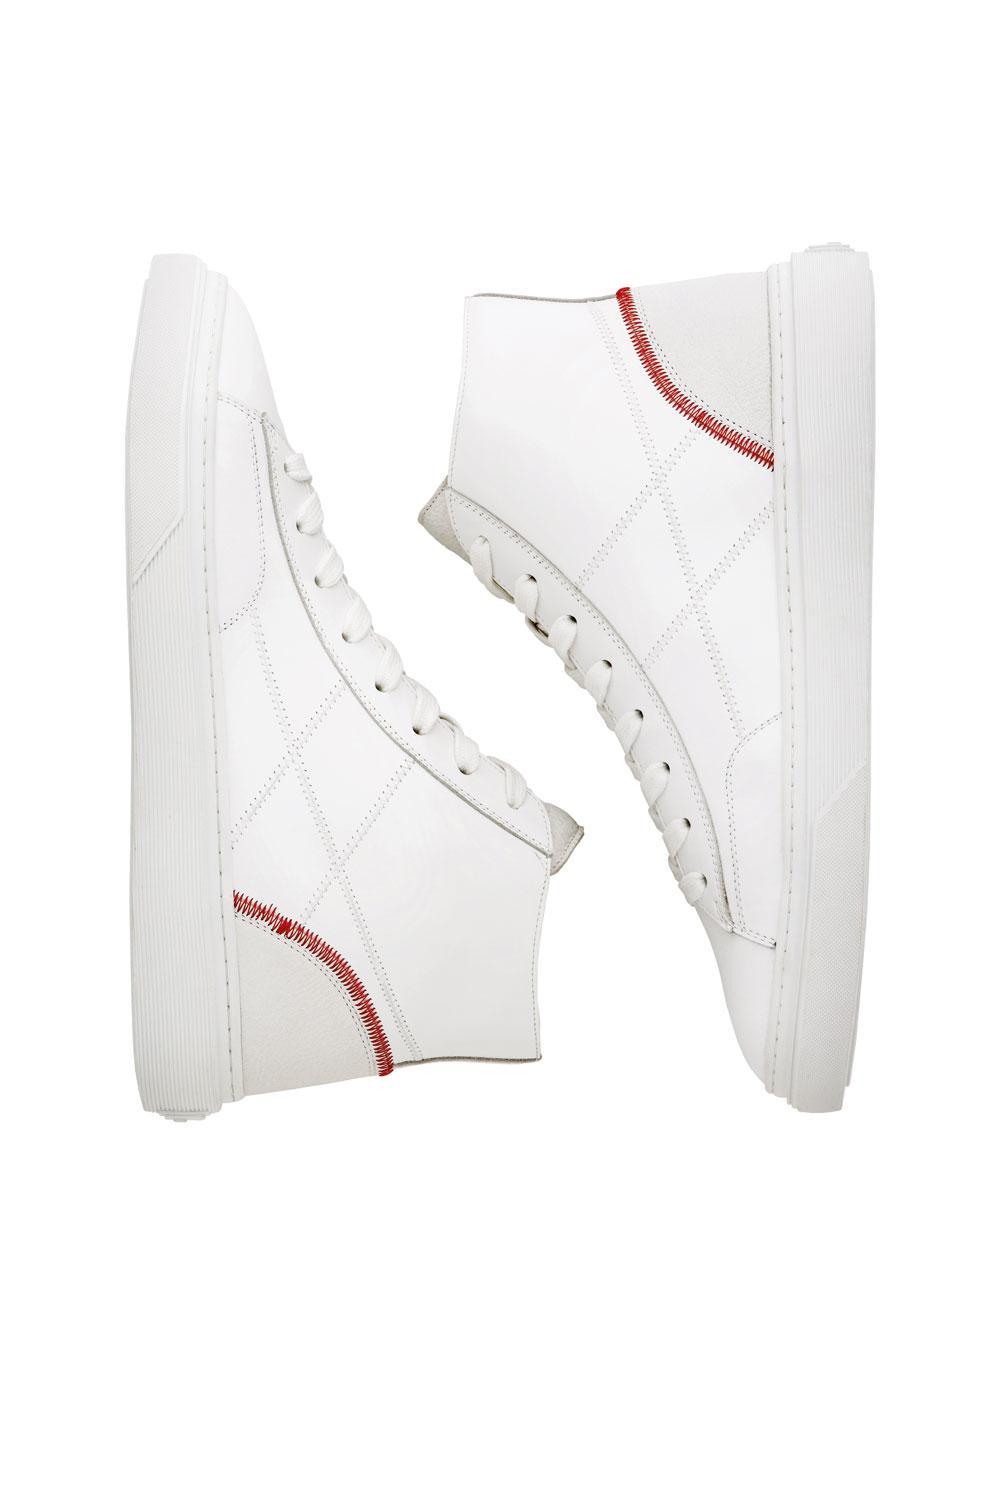 Sneakers Hi-Top H340 en cuir blanc, Hogan, 325 euros